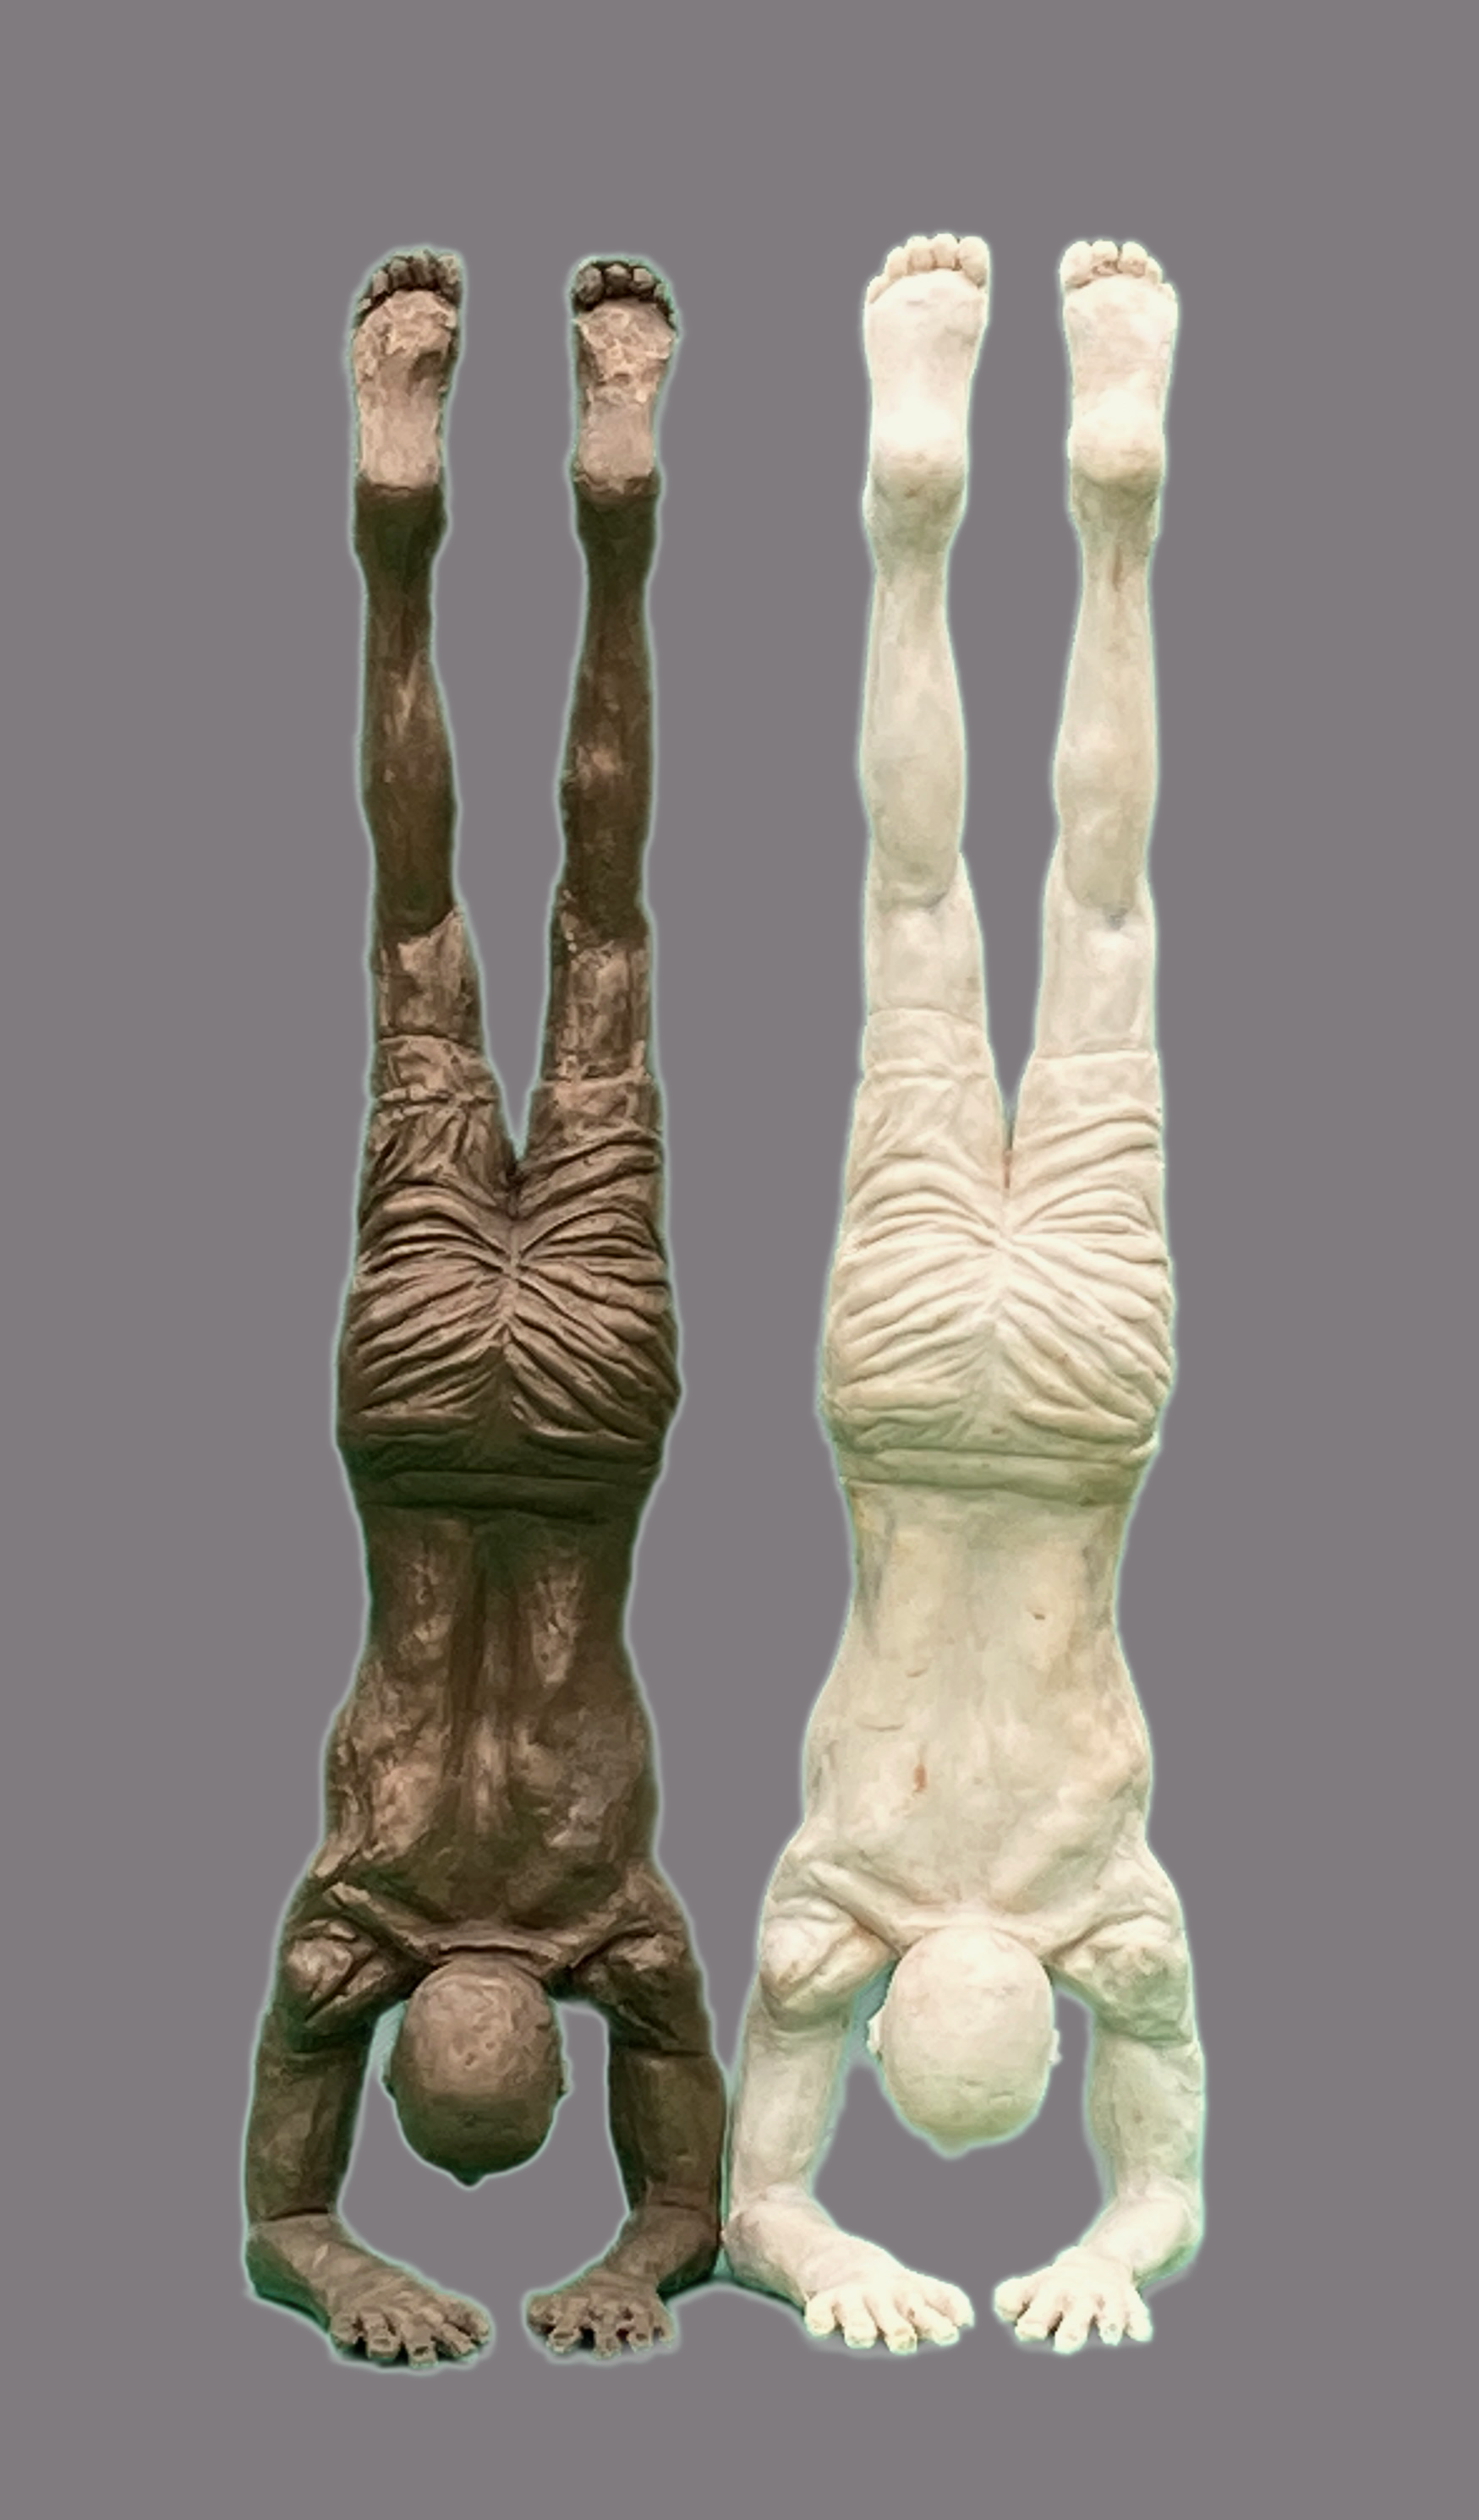 Double Doug, 40cm x 18cm x 10cm, bronze resin & cold cast jesmonite